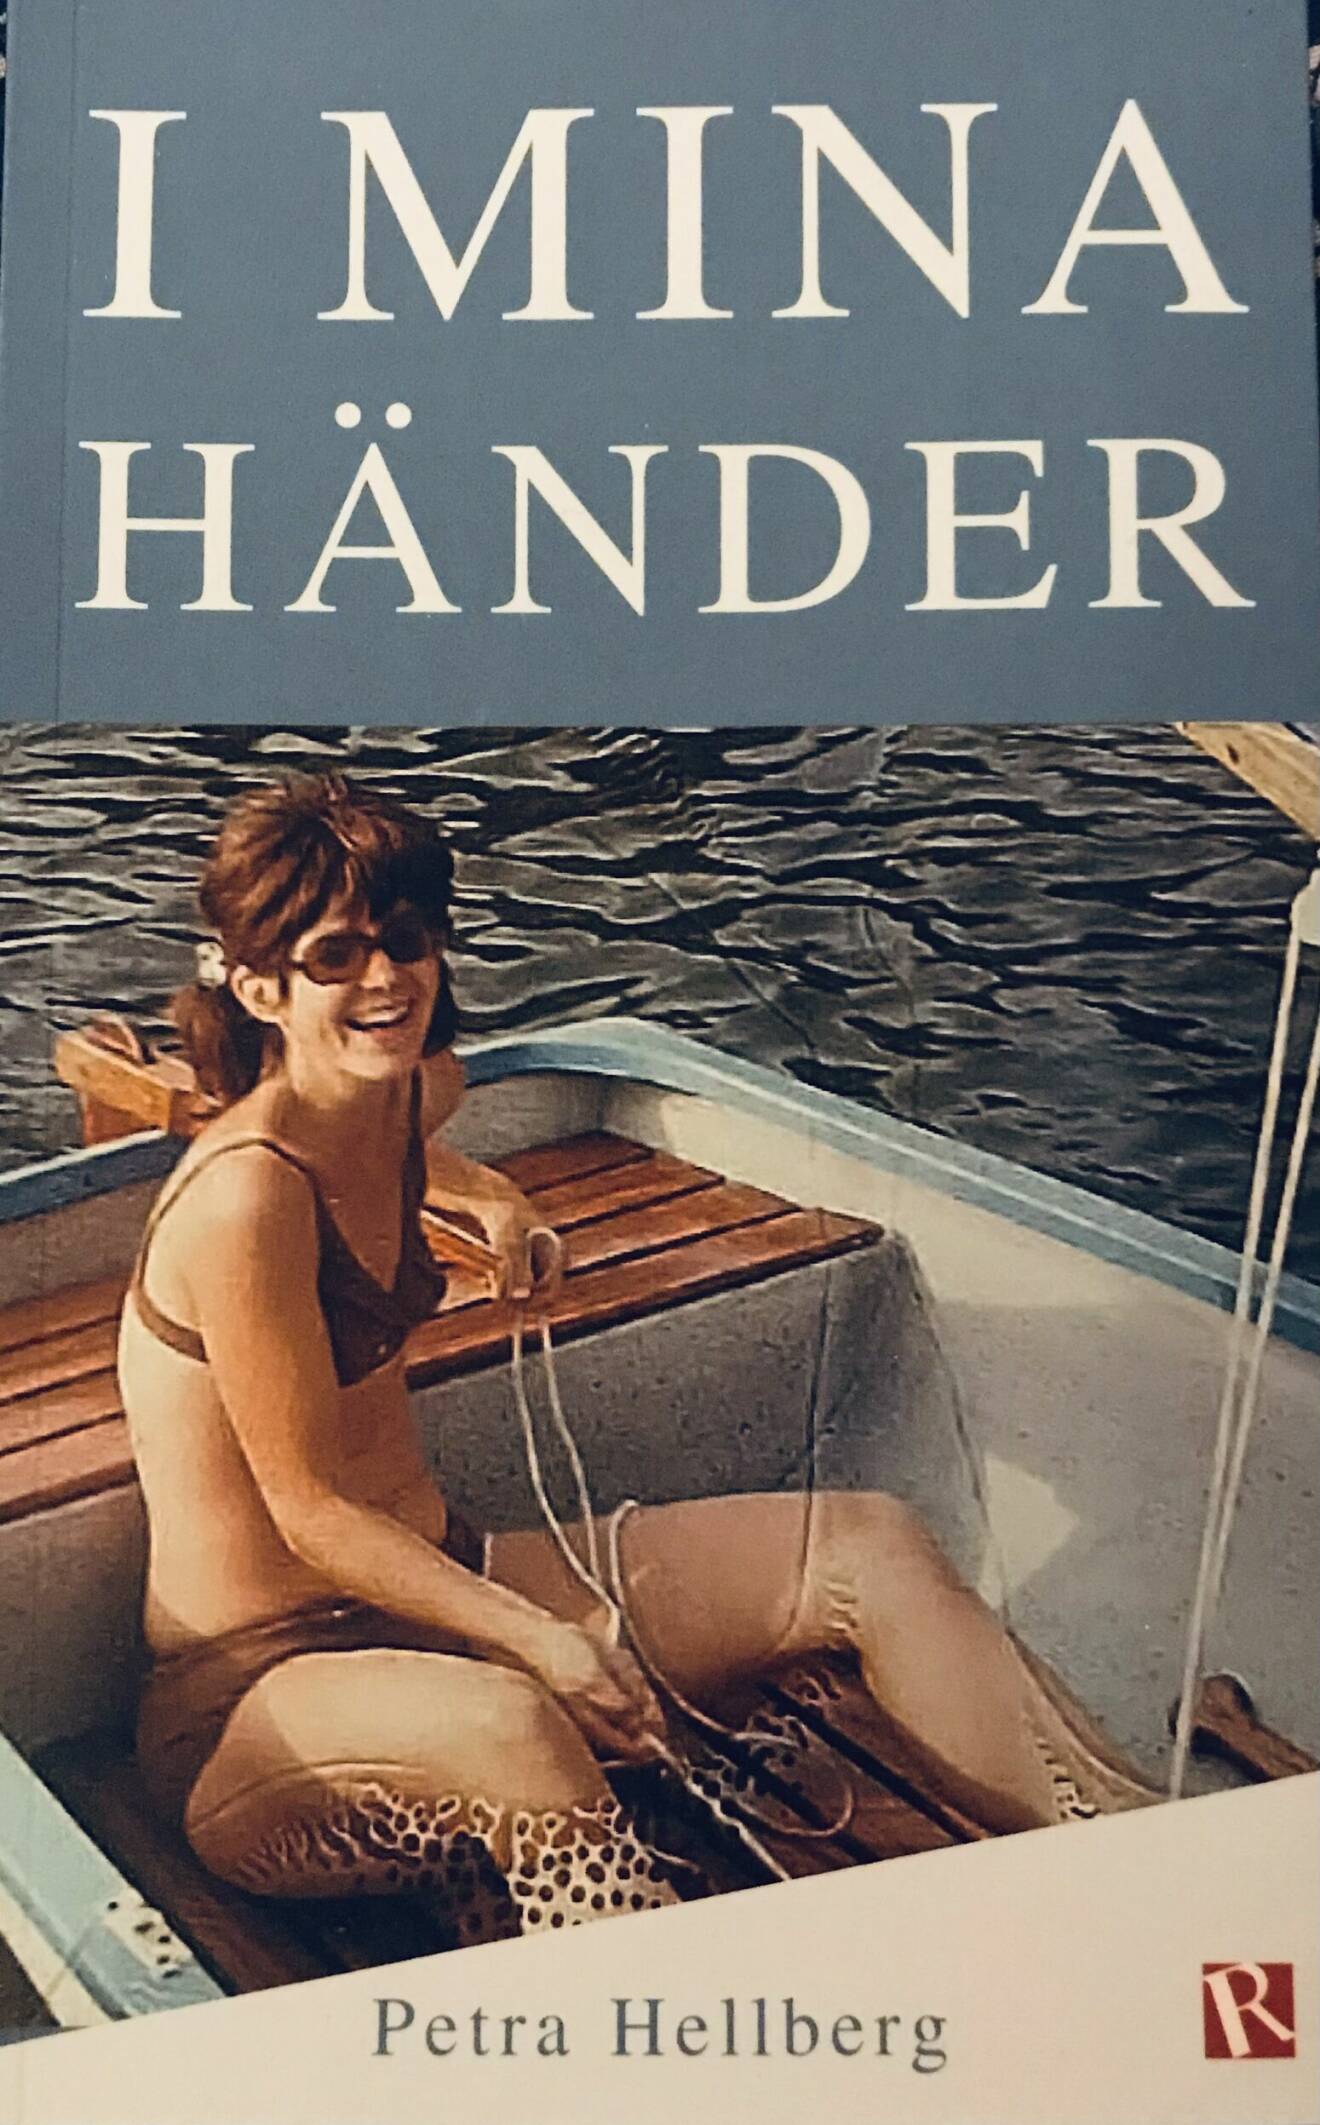 Bokomslag med en kvinna som sitter i en träbåt, i bikini, och ler glatt.